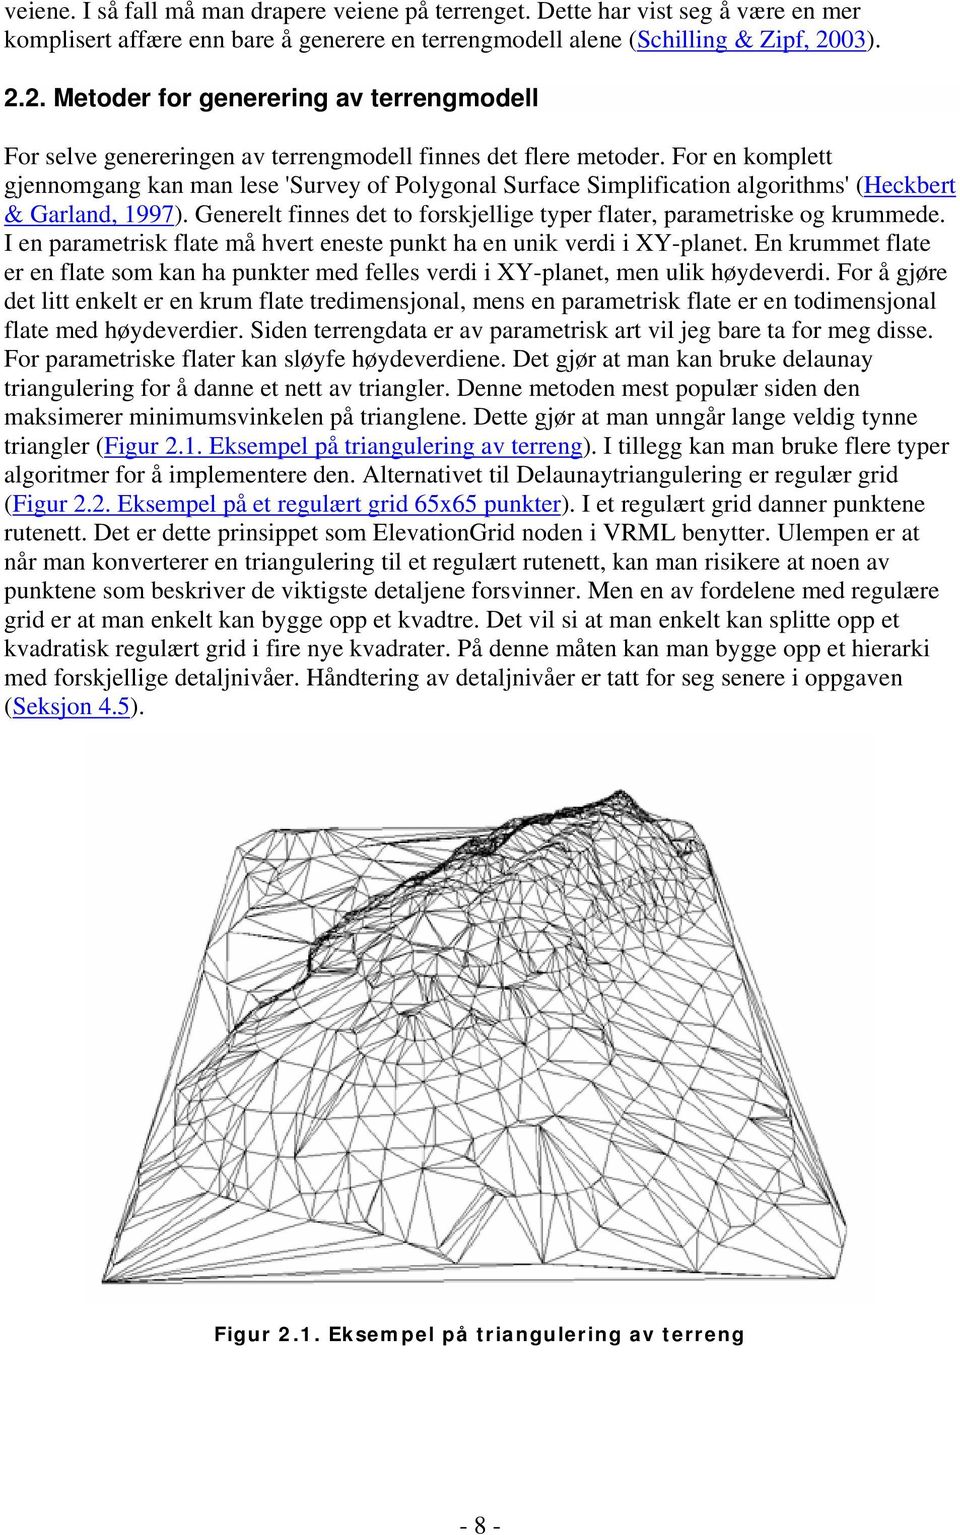 For en komplett gjennomgang kan man lese 'Survey of Polygonal Surface Simplification algorithms' (Heckbert & Garland, 1997). Generelt finnes det to forskjellige typer flater, parametriske og krummede.